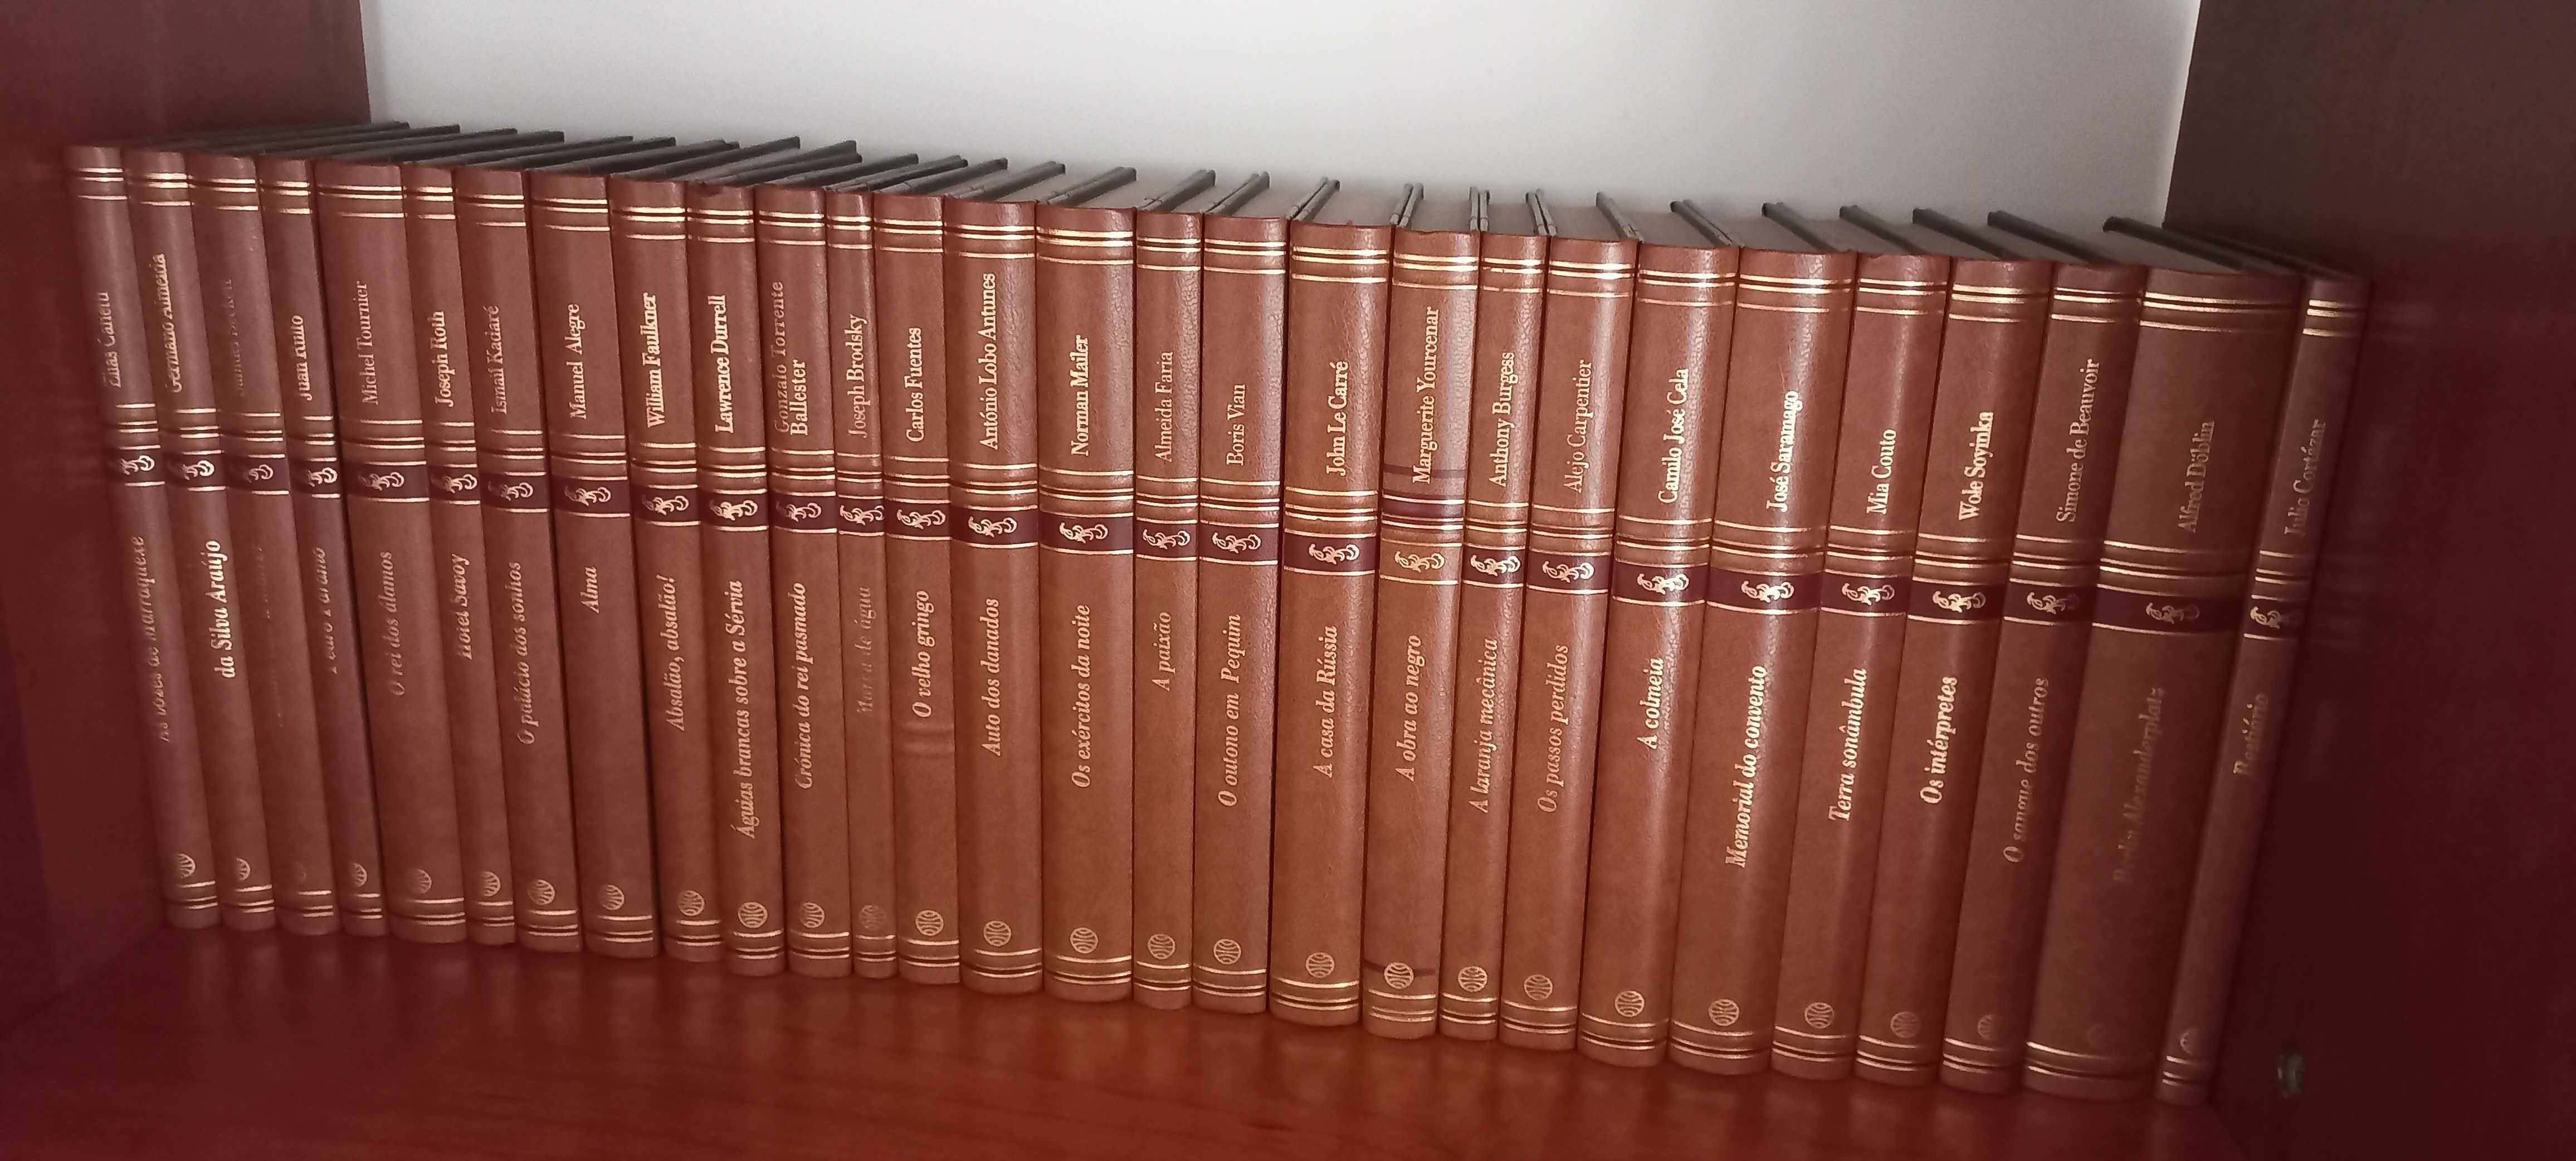 Coleção de 45 livros - Clássicos Contemporâneos - Editora Planeta.